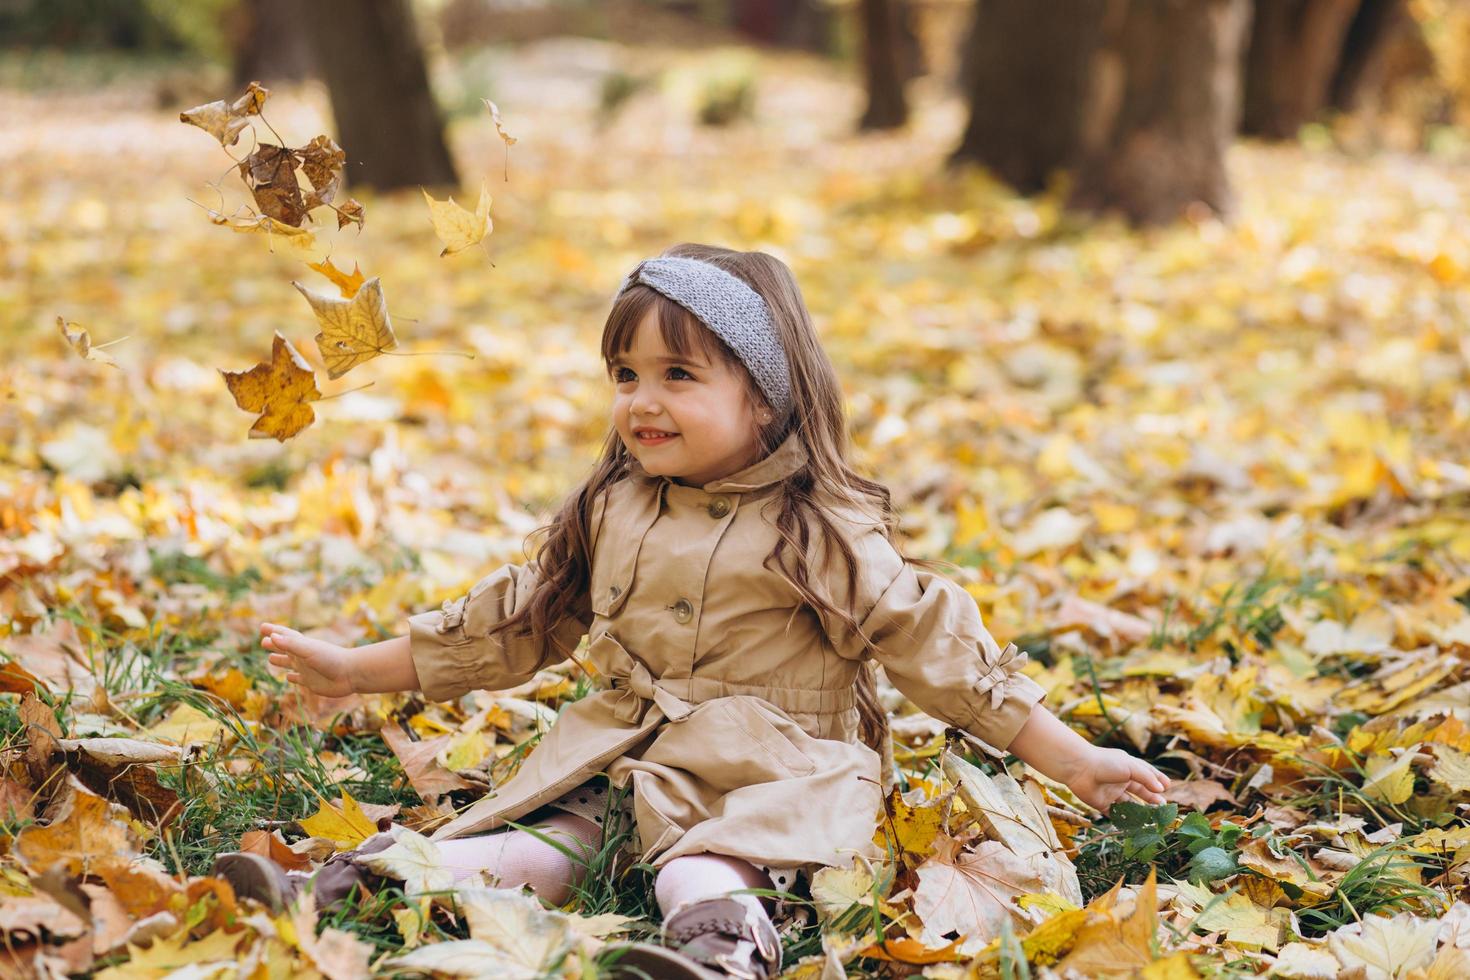 niña con un abrigo beige sentada entre hojas en el parque de otoño. foto